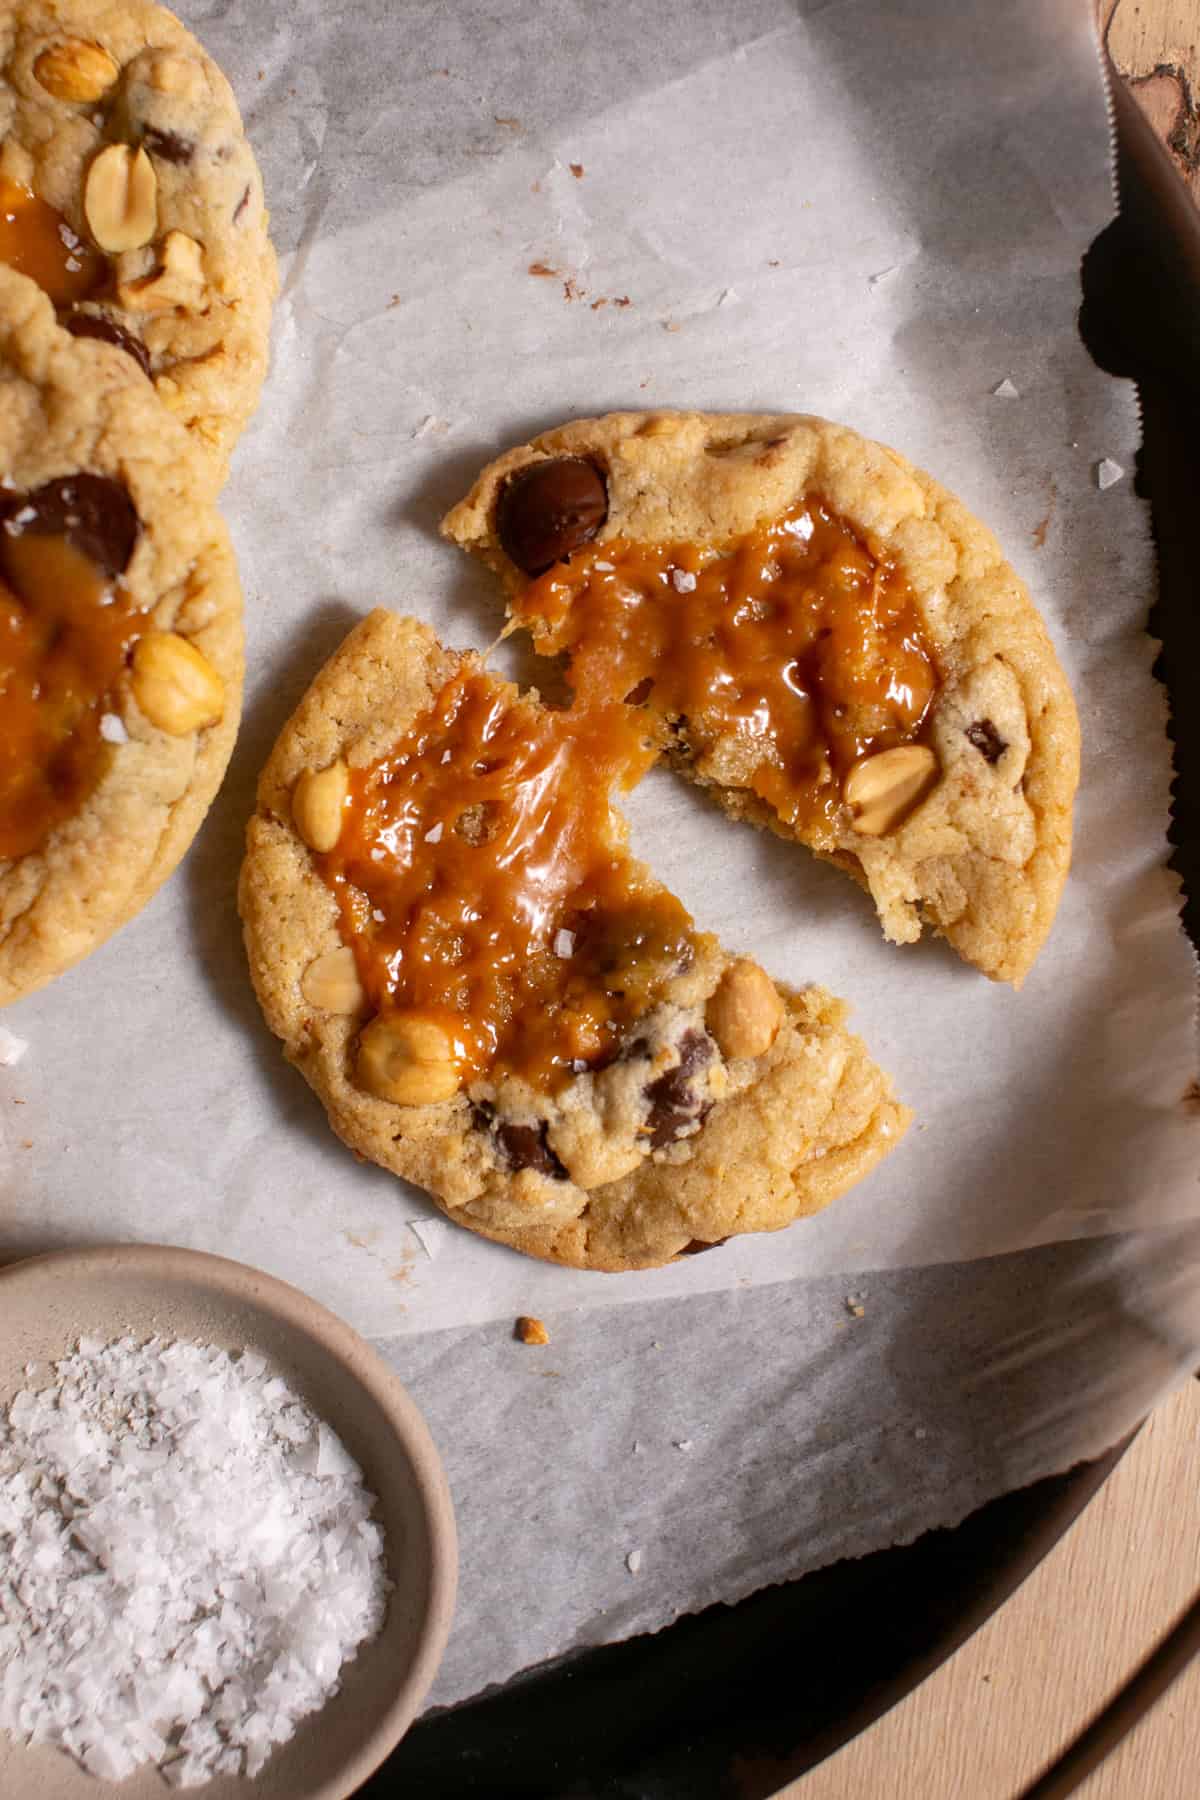 Snickers Cookie broken in half with caramel pulling in between.